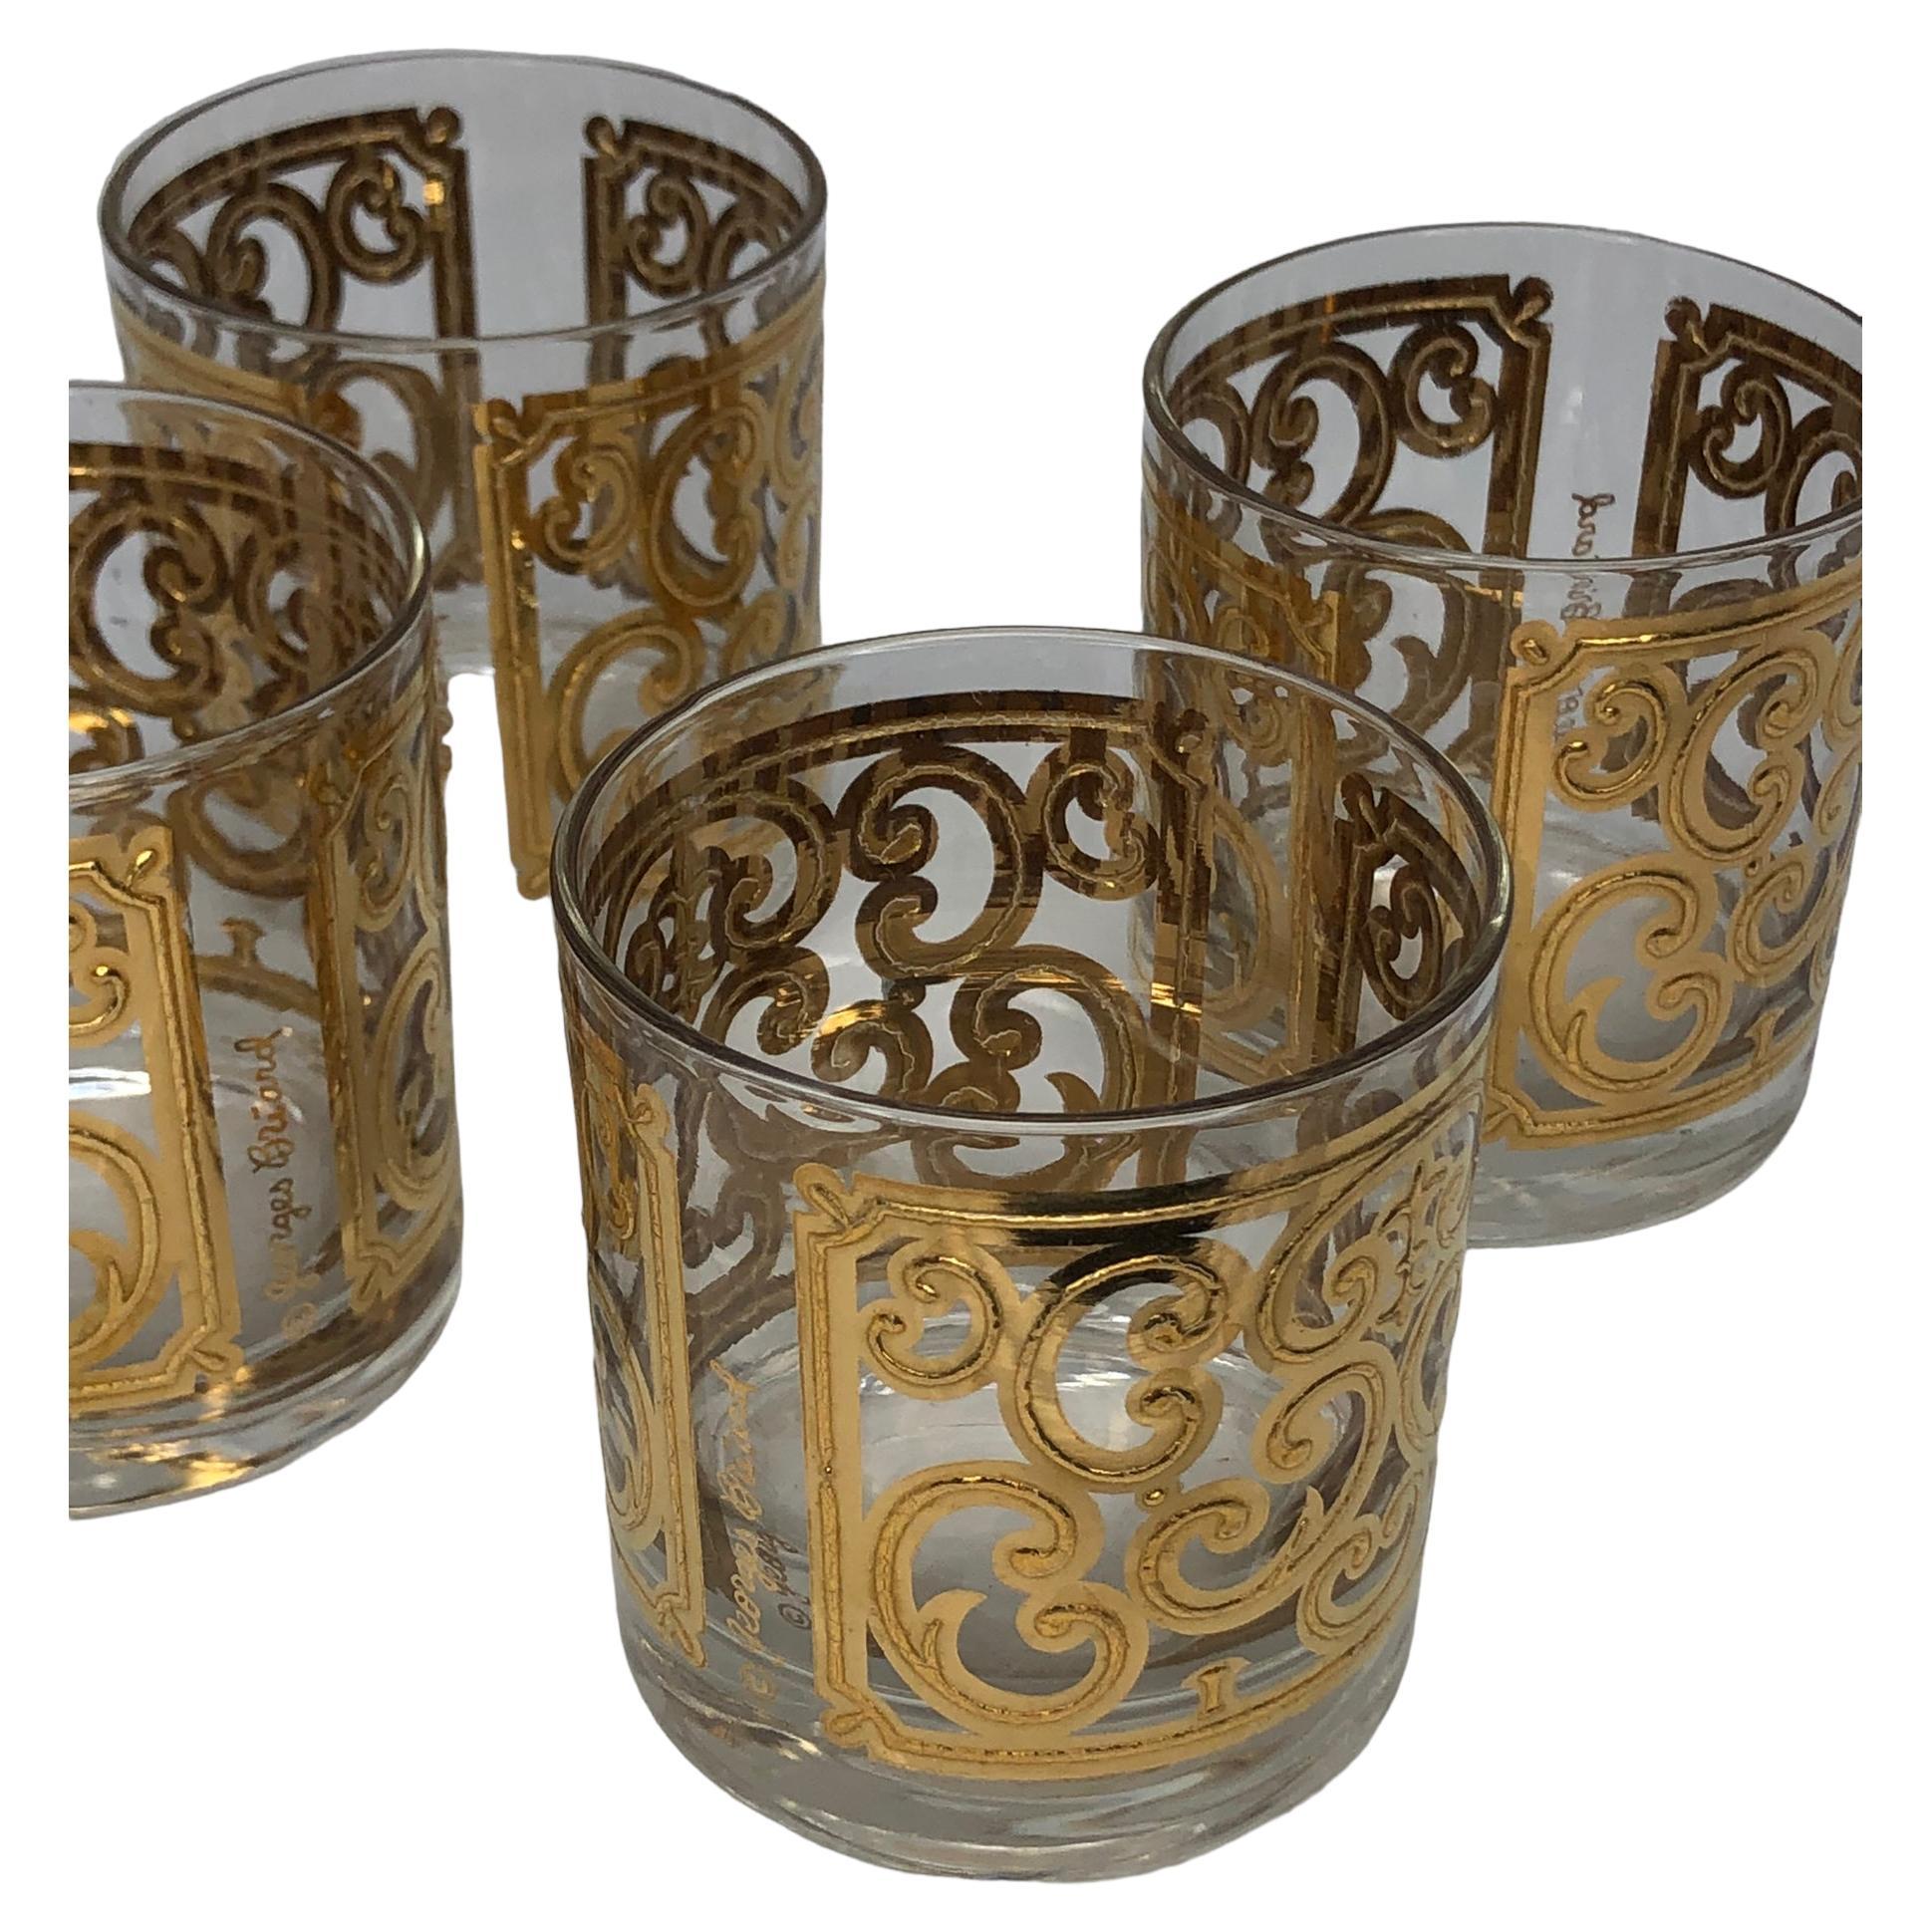 Ensemble de quatre verres à champagne vintage Georges Briard en or espagnol. Décorations audacieuses appliquées à l'or en forme de volutes. Il s'agit d'un modèle rare et difficile à trouver. Nous avons deux séries de quatre disponibles et elles sont